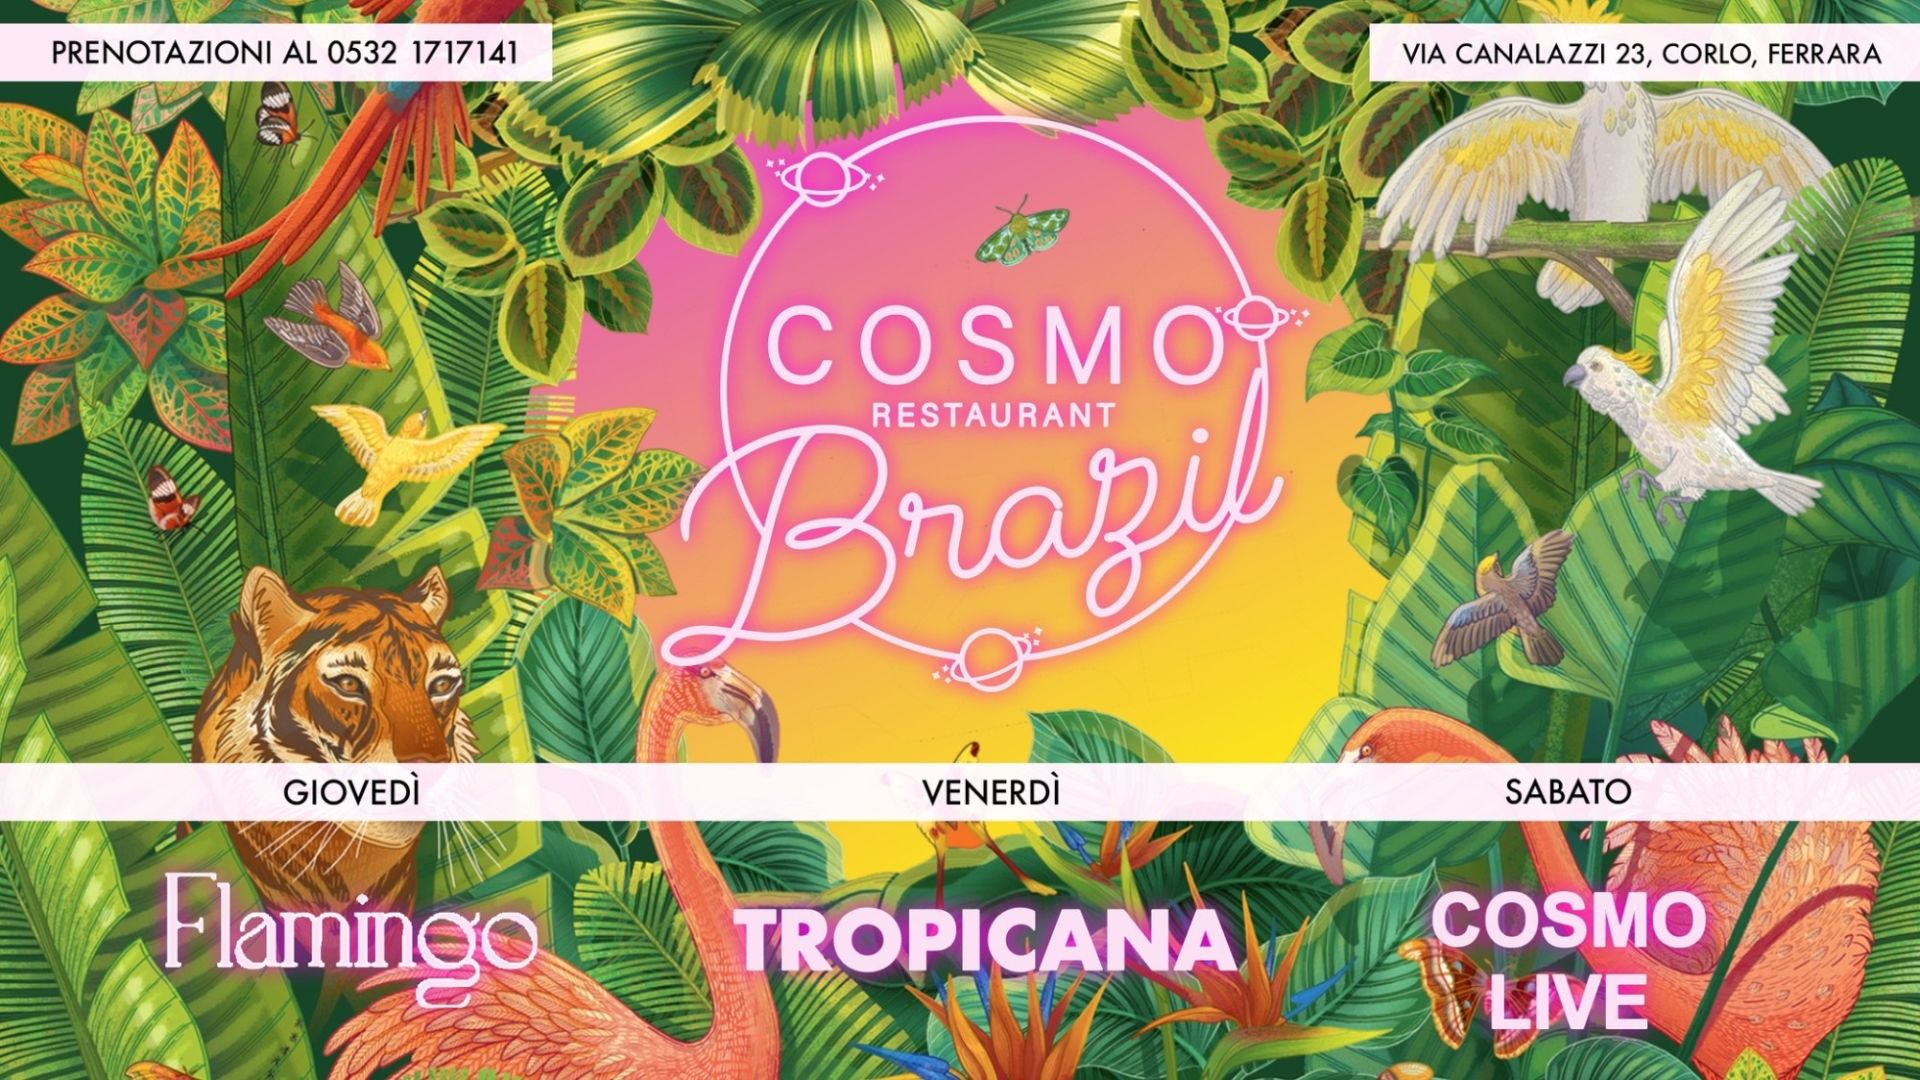 Cosmo Restaurant presenta "Brazil"